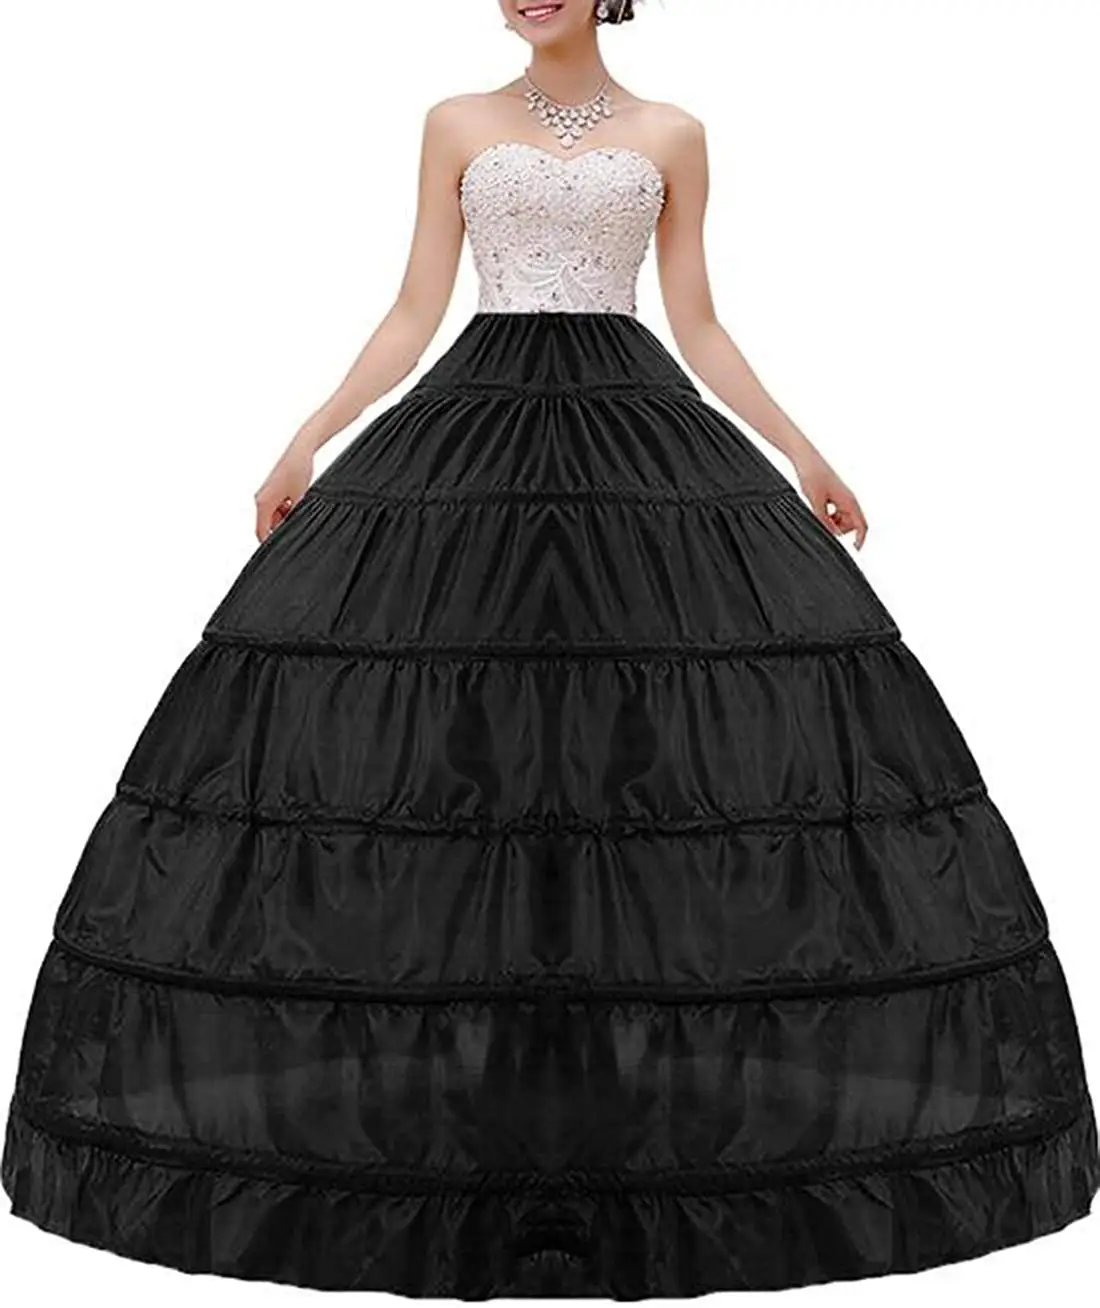 Lady/Women 4 Hoop Petticoat Long Crinoline Bridal Underskirt Fancy Skirt Slips 